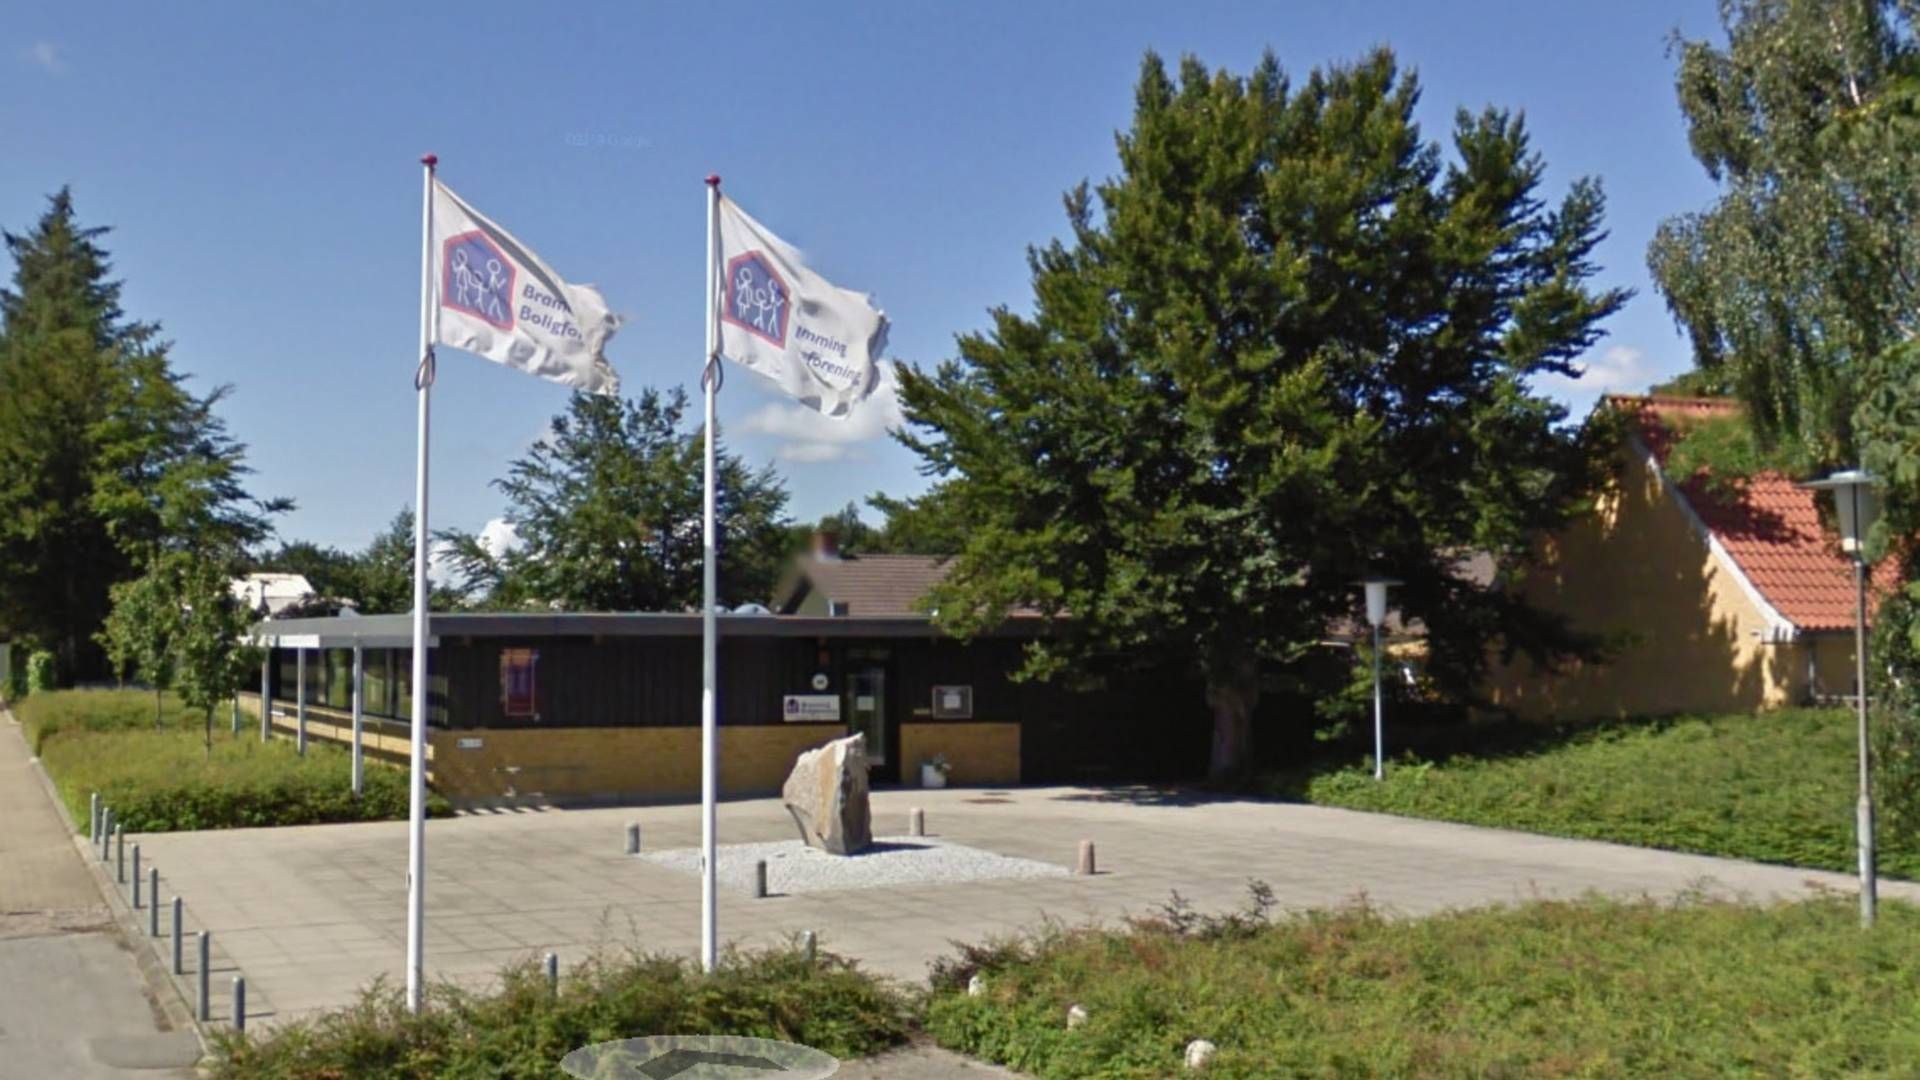 Bramming Boligforenings lokalkontor har været lukket i et halvt års tid. | Foto: Google